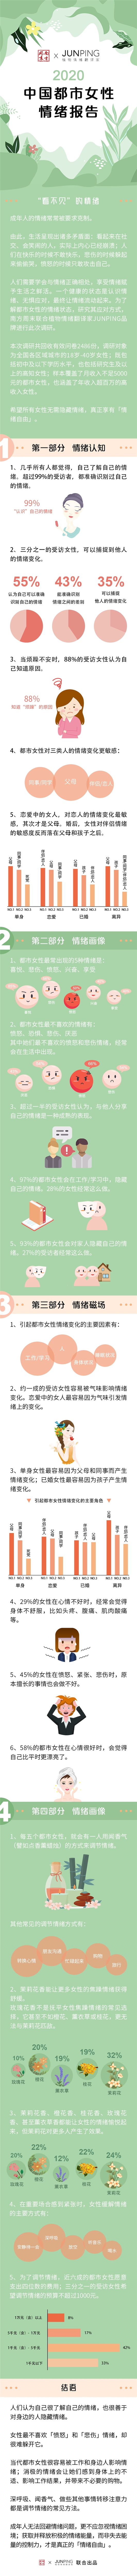 《2020中国都市女性情绪报告》: 1/5女性会用闻香气的方式来调节情绪